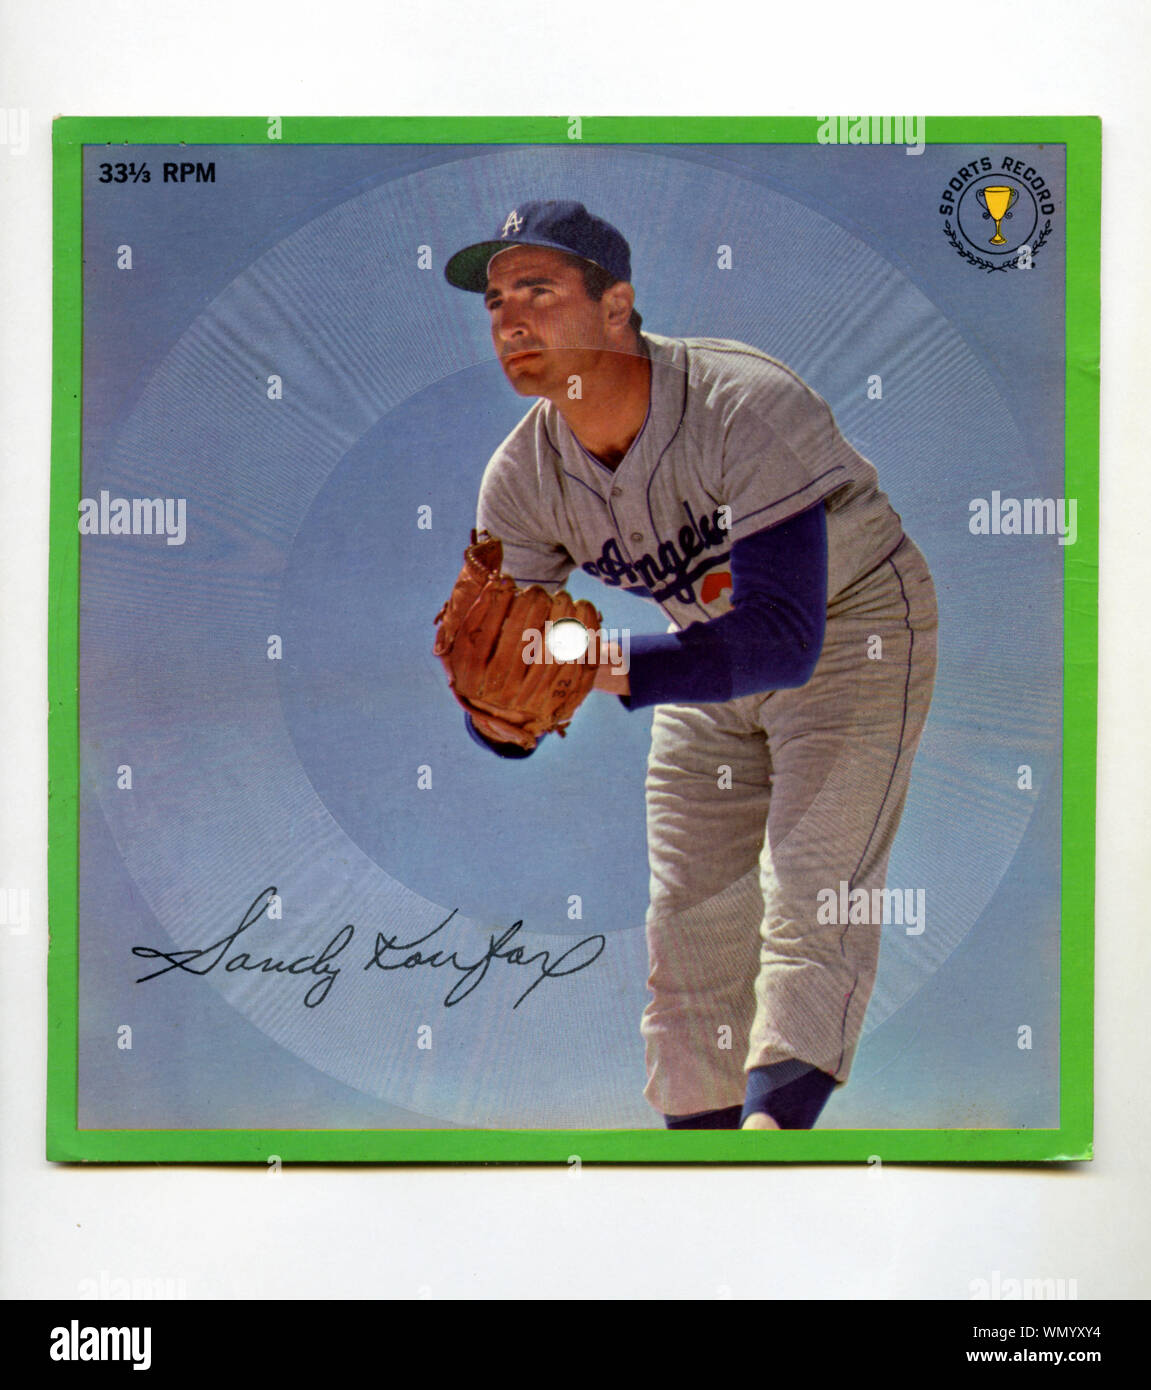 Collectible foto Aufzeichnung der Hall of Fame Krug Sandy Koufax mit Los Angeles Dodgers um 1960. Stockfoto